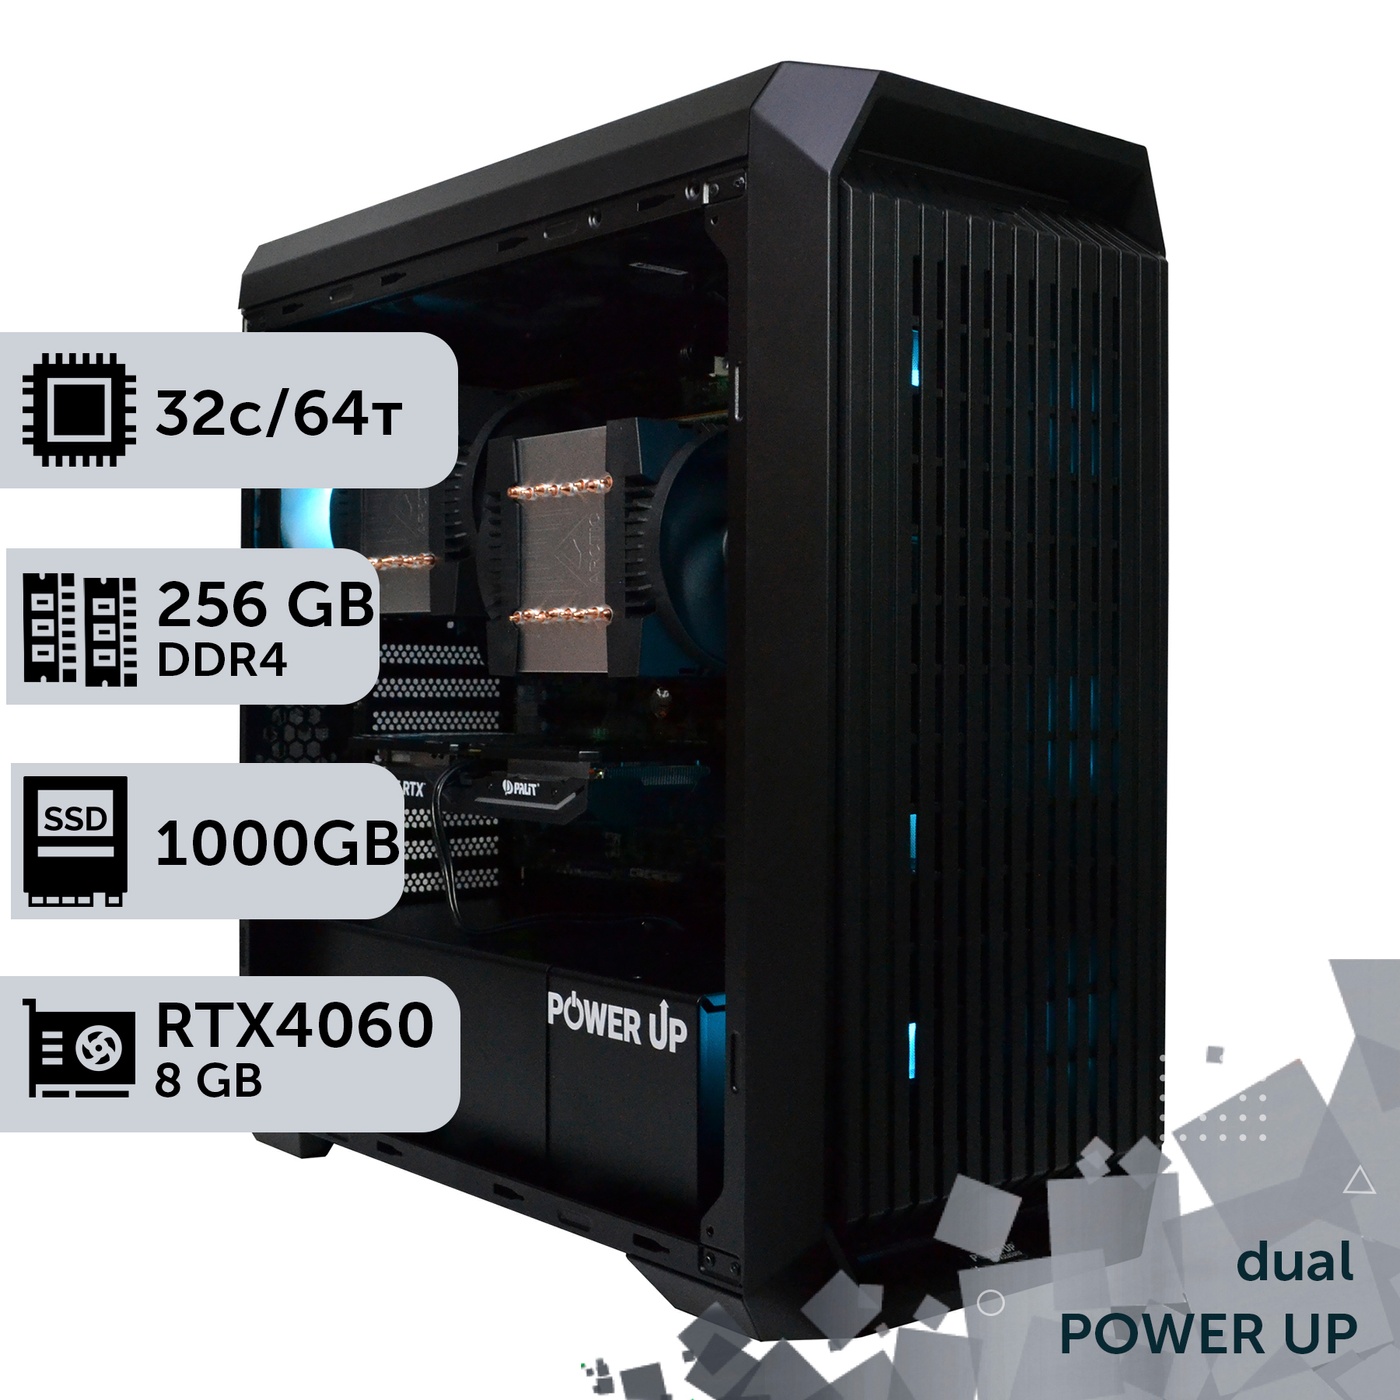 Двухпроцессорная рабочая станция PowerUp #376 AMD EPYC 7282 x2/256 GB/SSD 1TB/GeForce RTX 4060 8GB